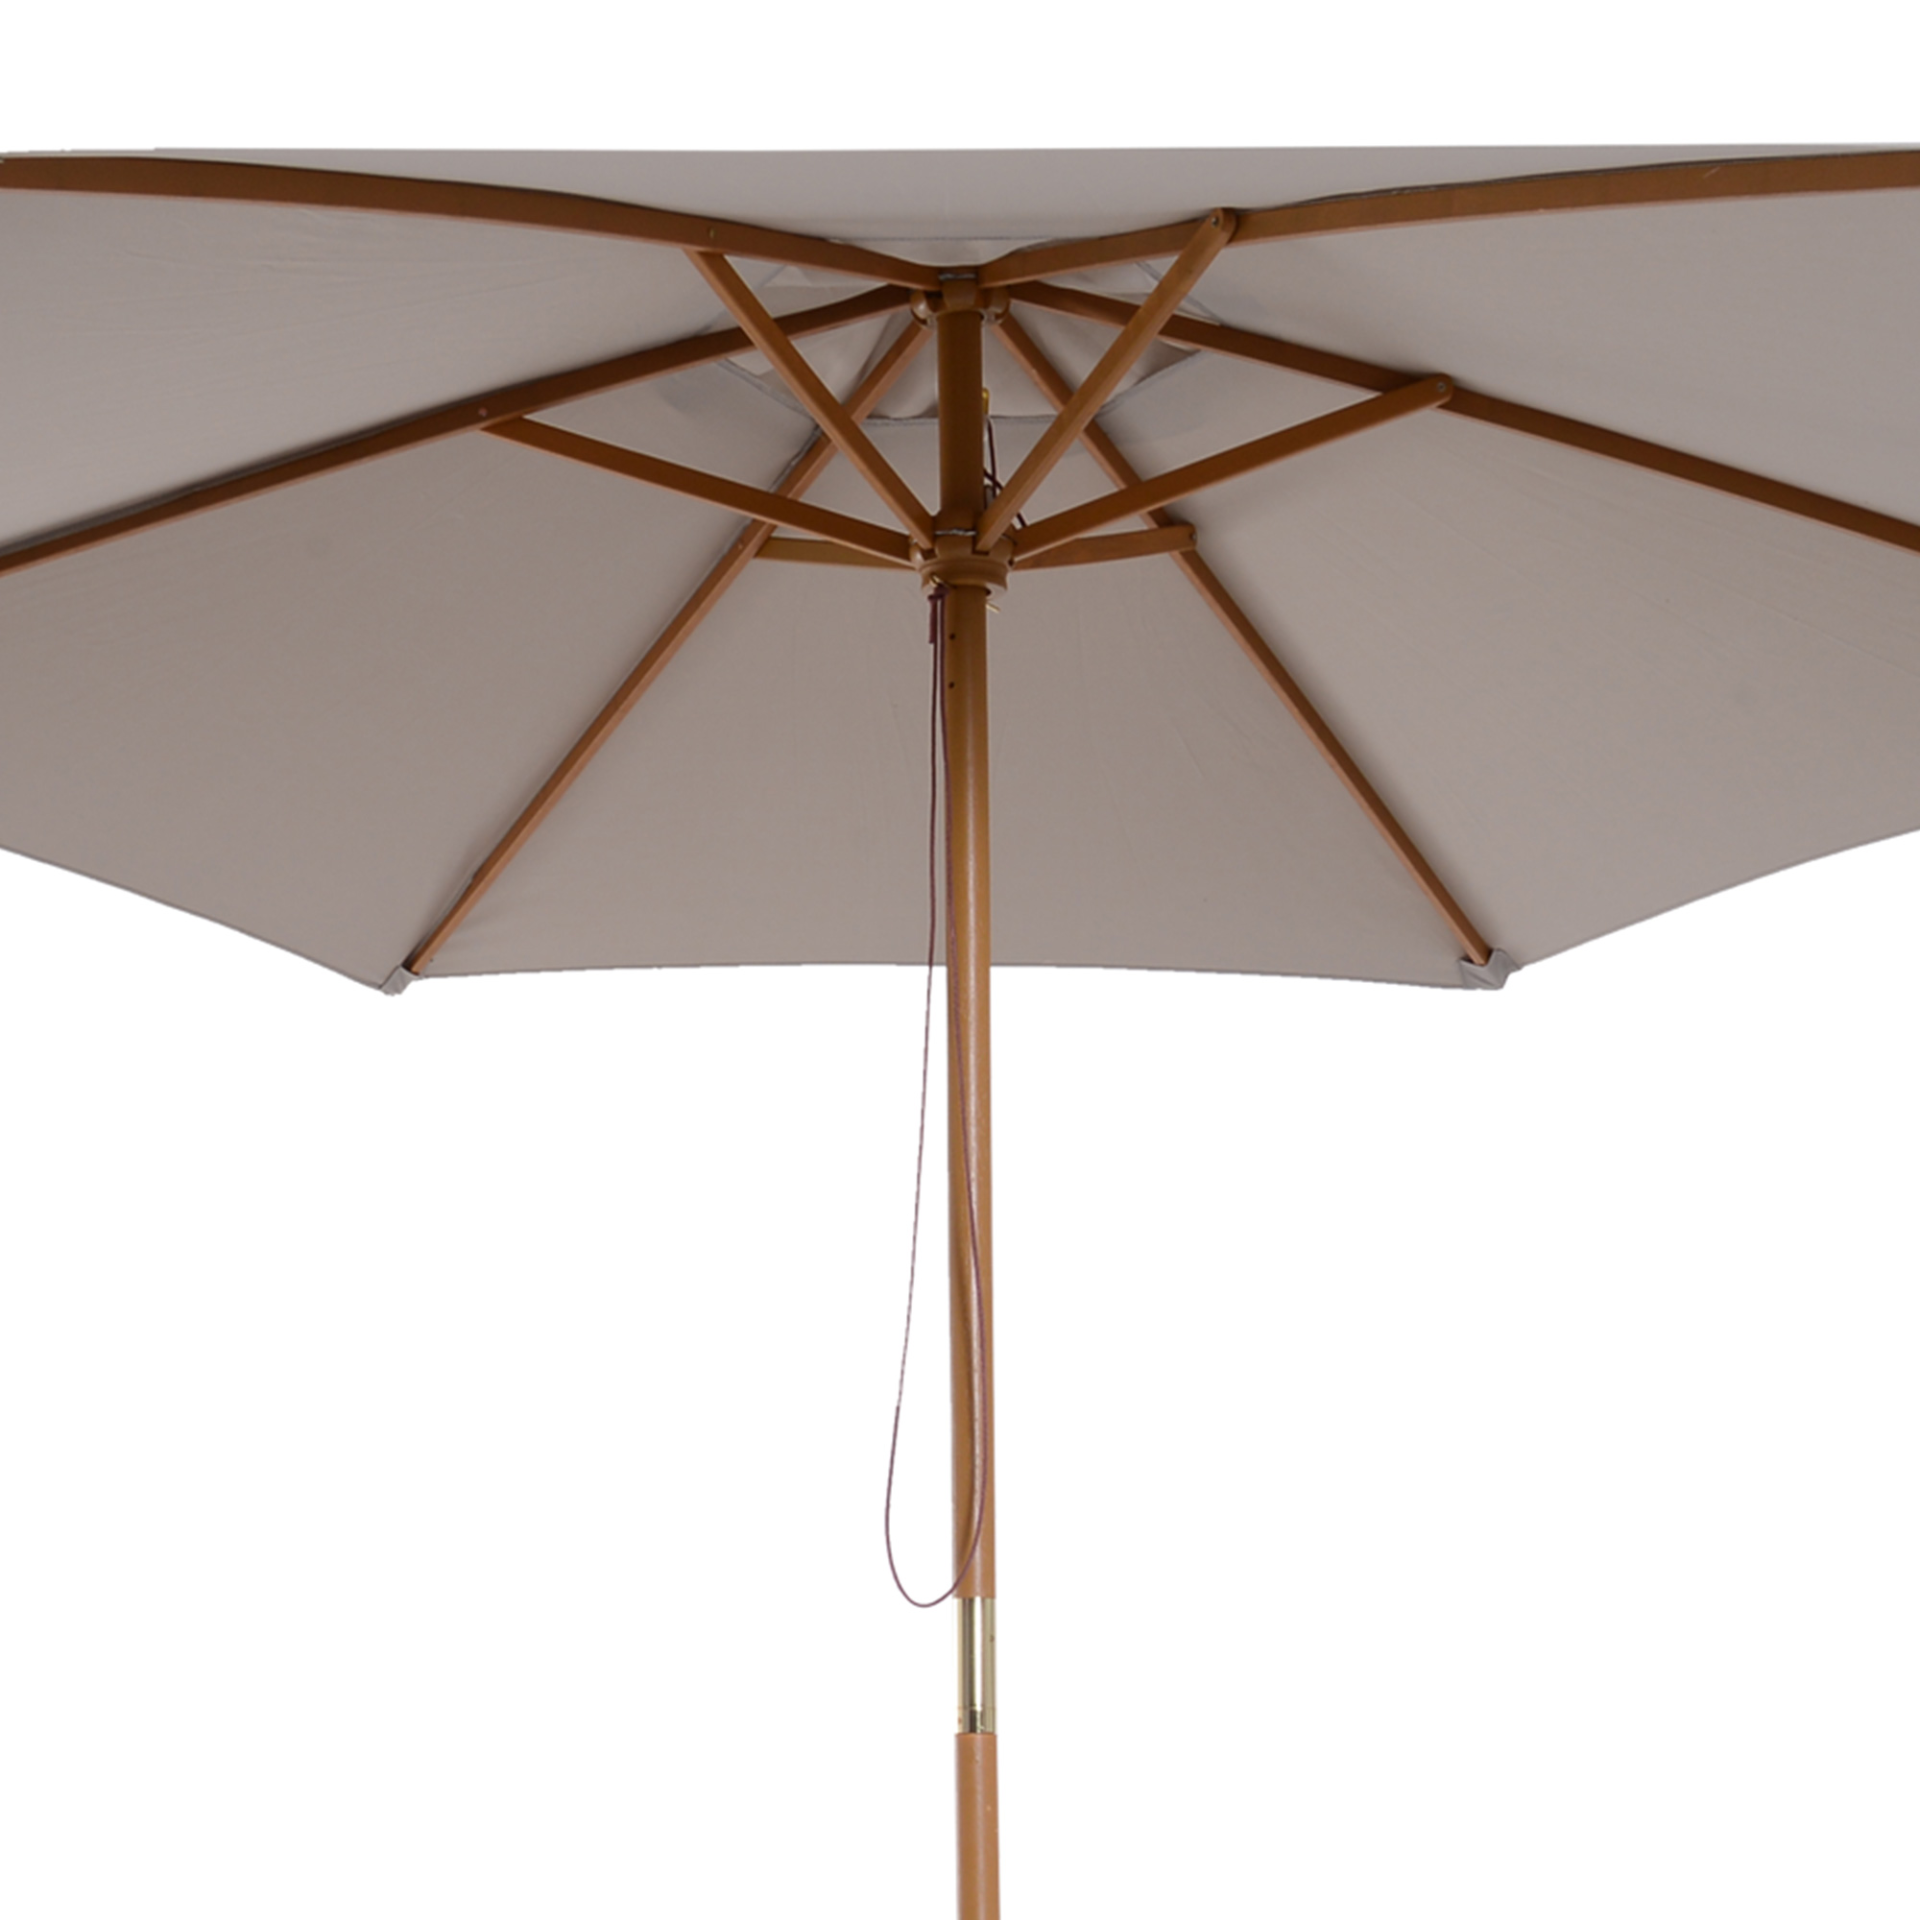 Outsunny 2.5m Wood Garden Parasol Sun Shade Patio Outdoor Wooden Umbrella Canopy Grey